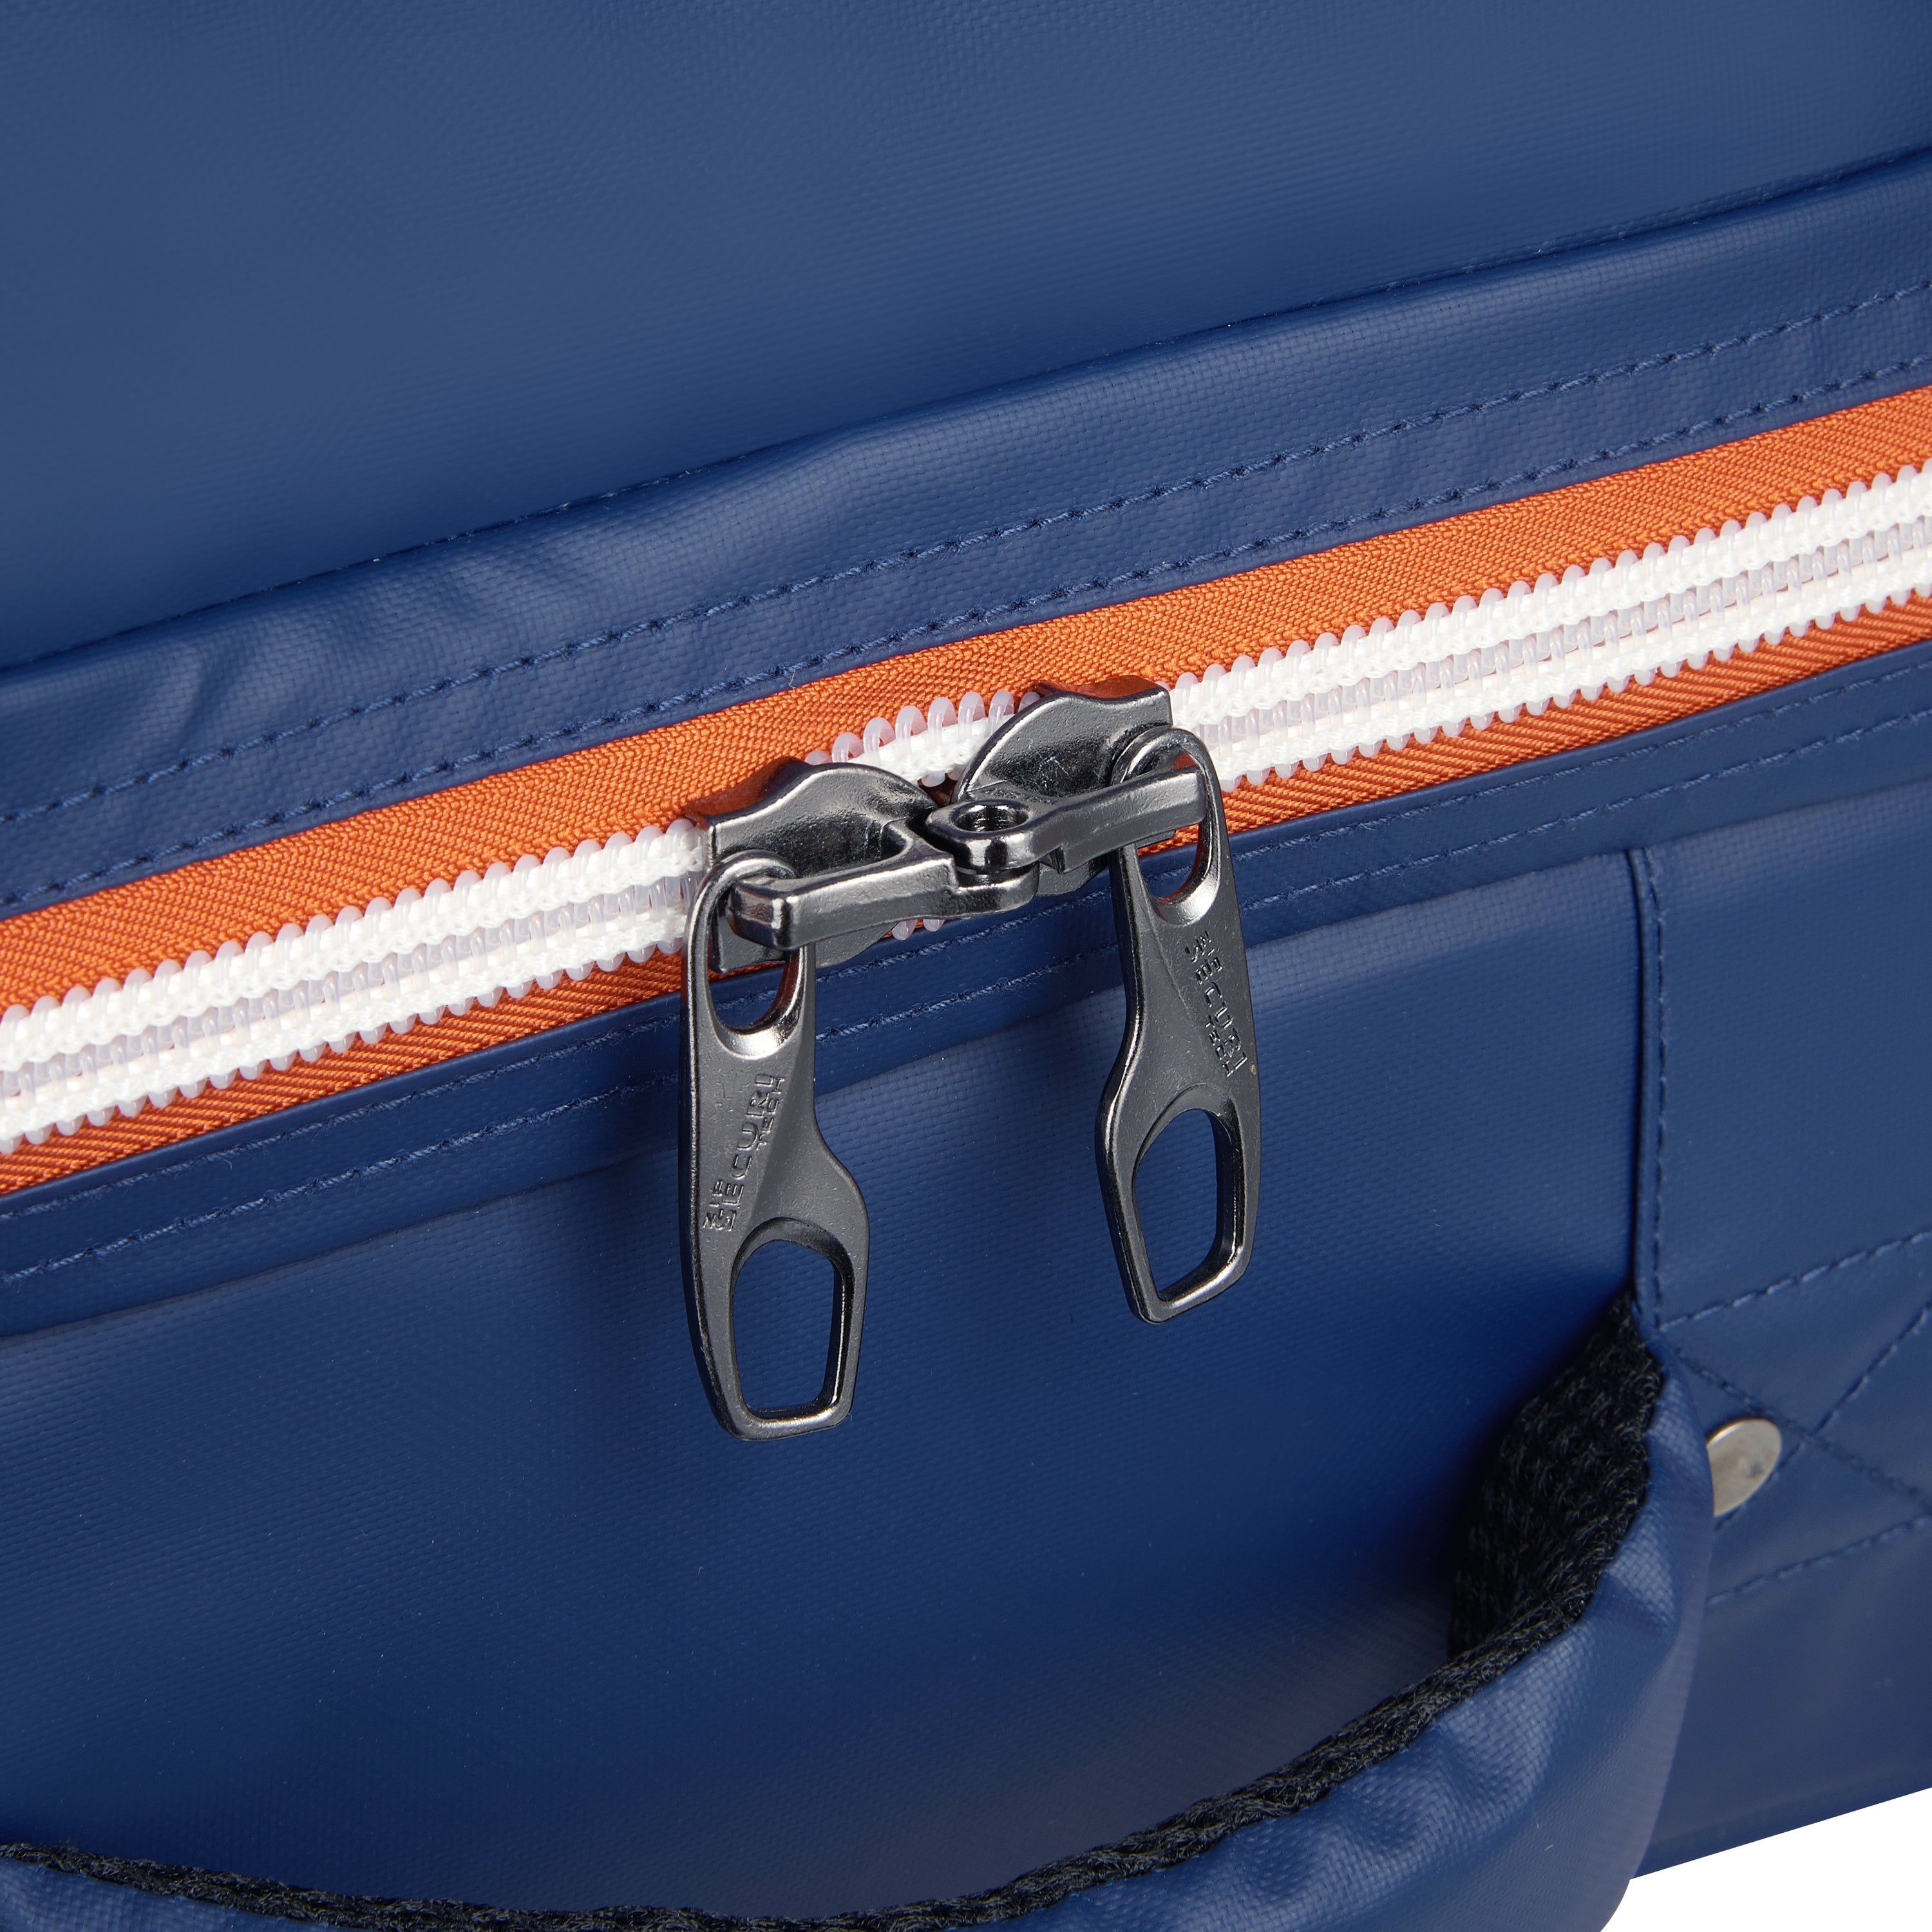 Delsey Raspail 64cm Softcase 2 Wheel Duffel Bag  Roland Garros Blue - 00328932102RG